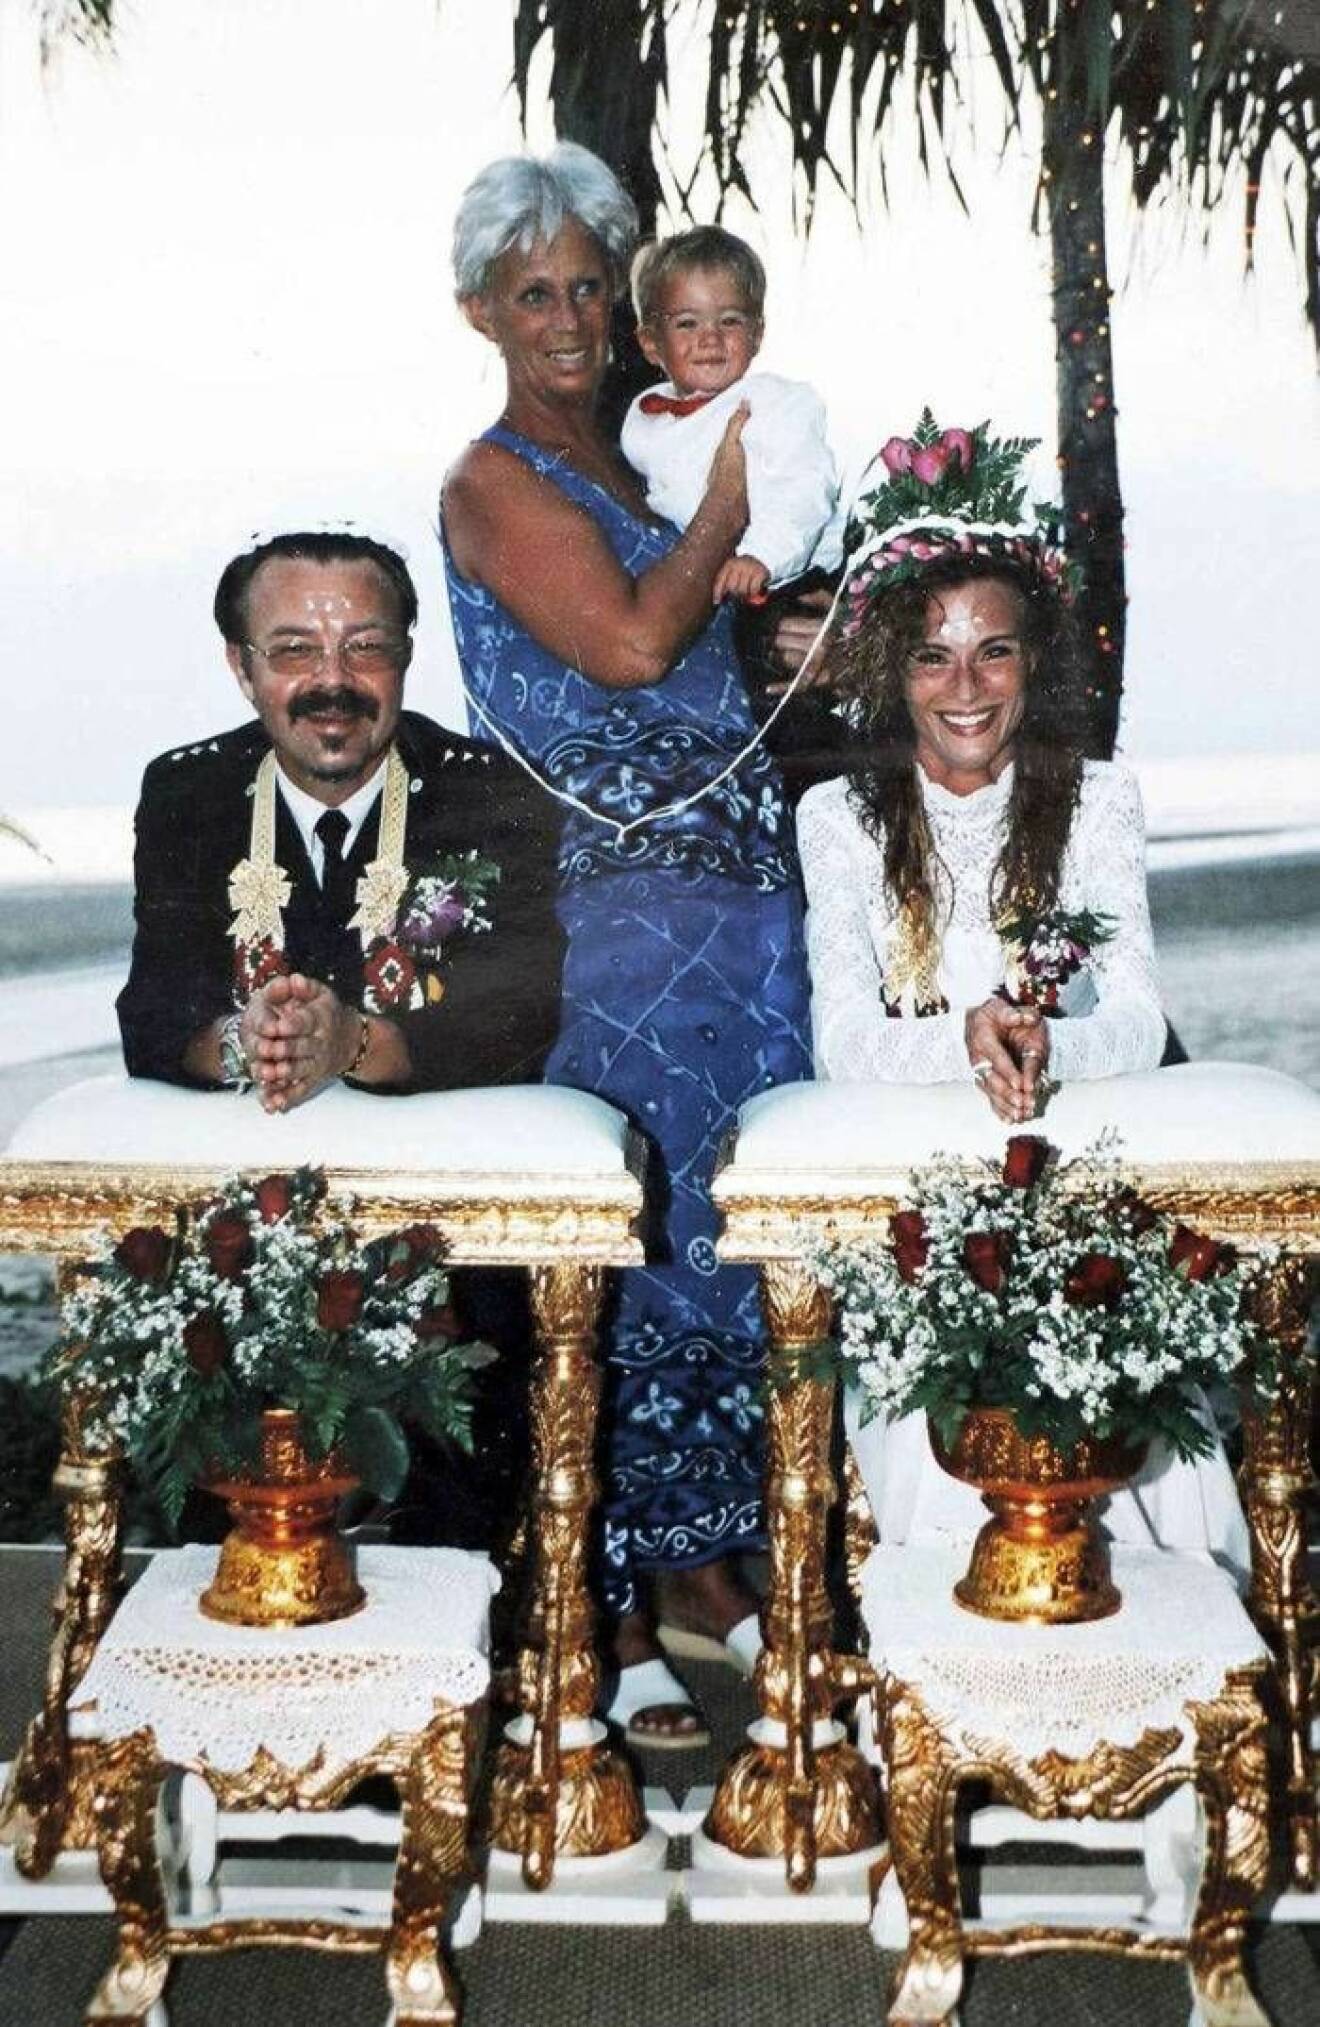 Sara och Christer på sin bröllopsdag den 25 december 2004.